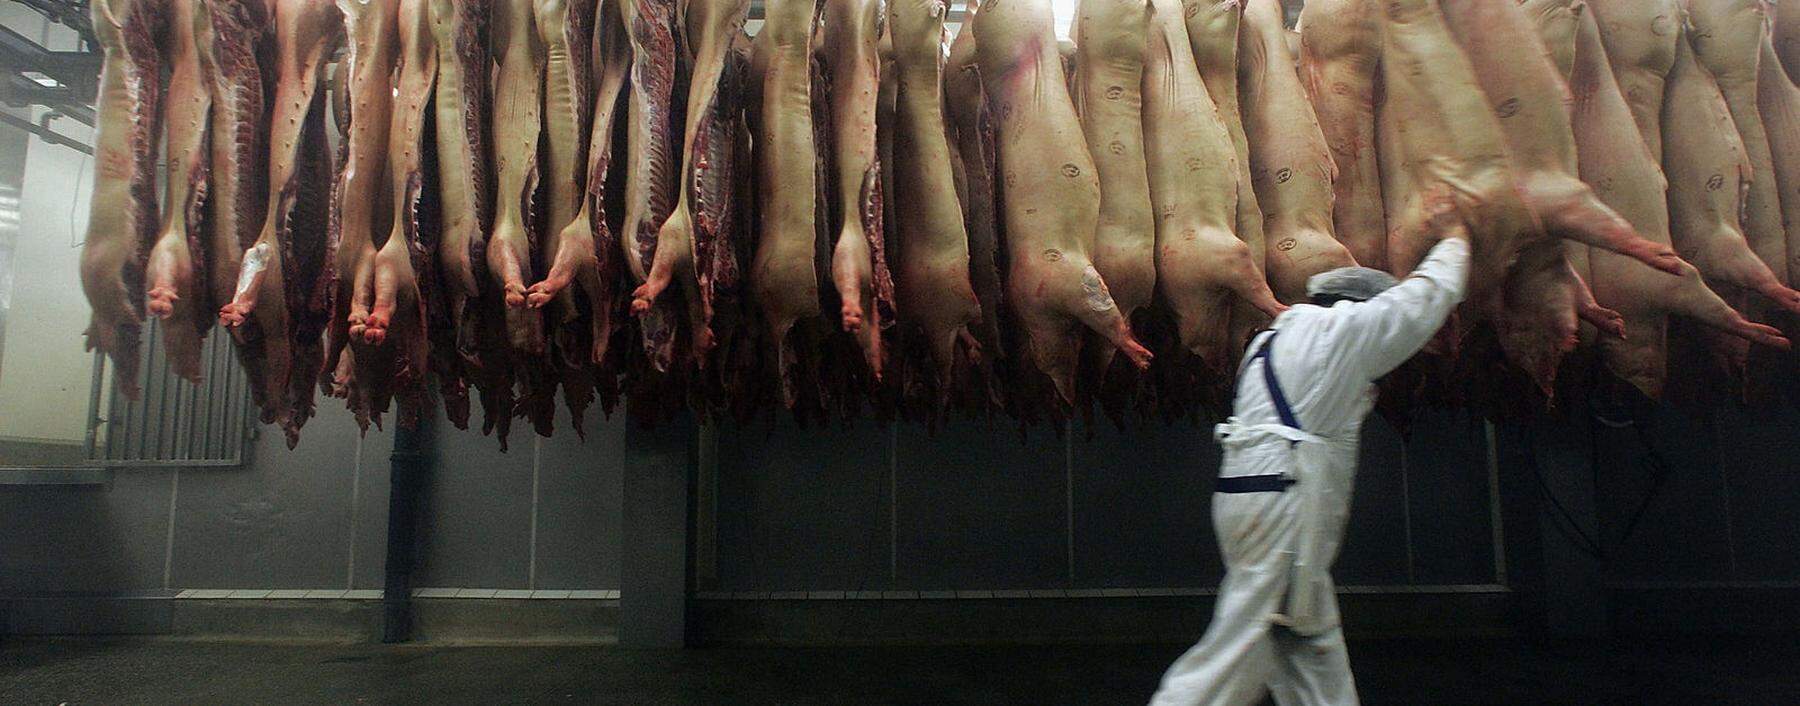 Die Fleischproduktion ist global vernetzt. Dass unser Schweinefleisch so billig ist, verdanken wir auch den Asiaten, die jene Teile kaufen, die wir nicht essen wollen.